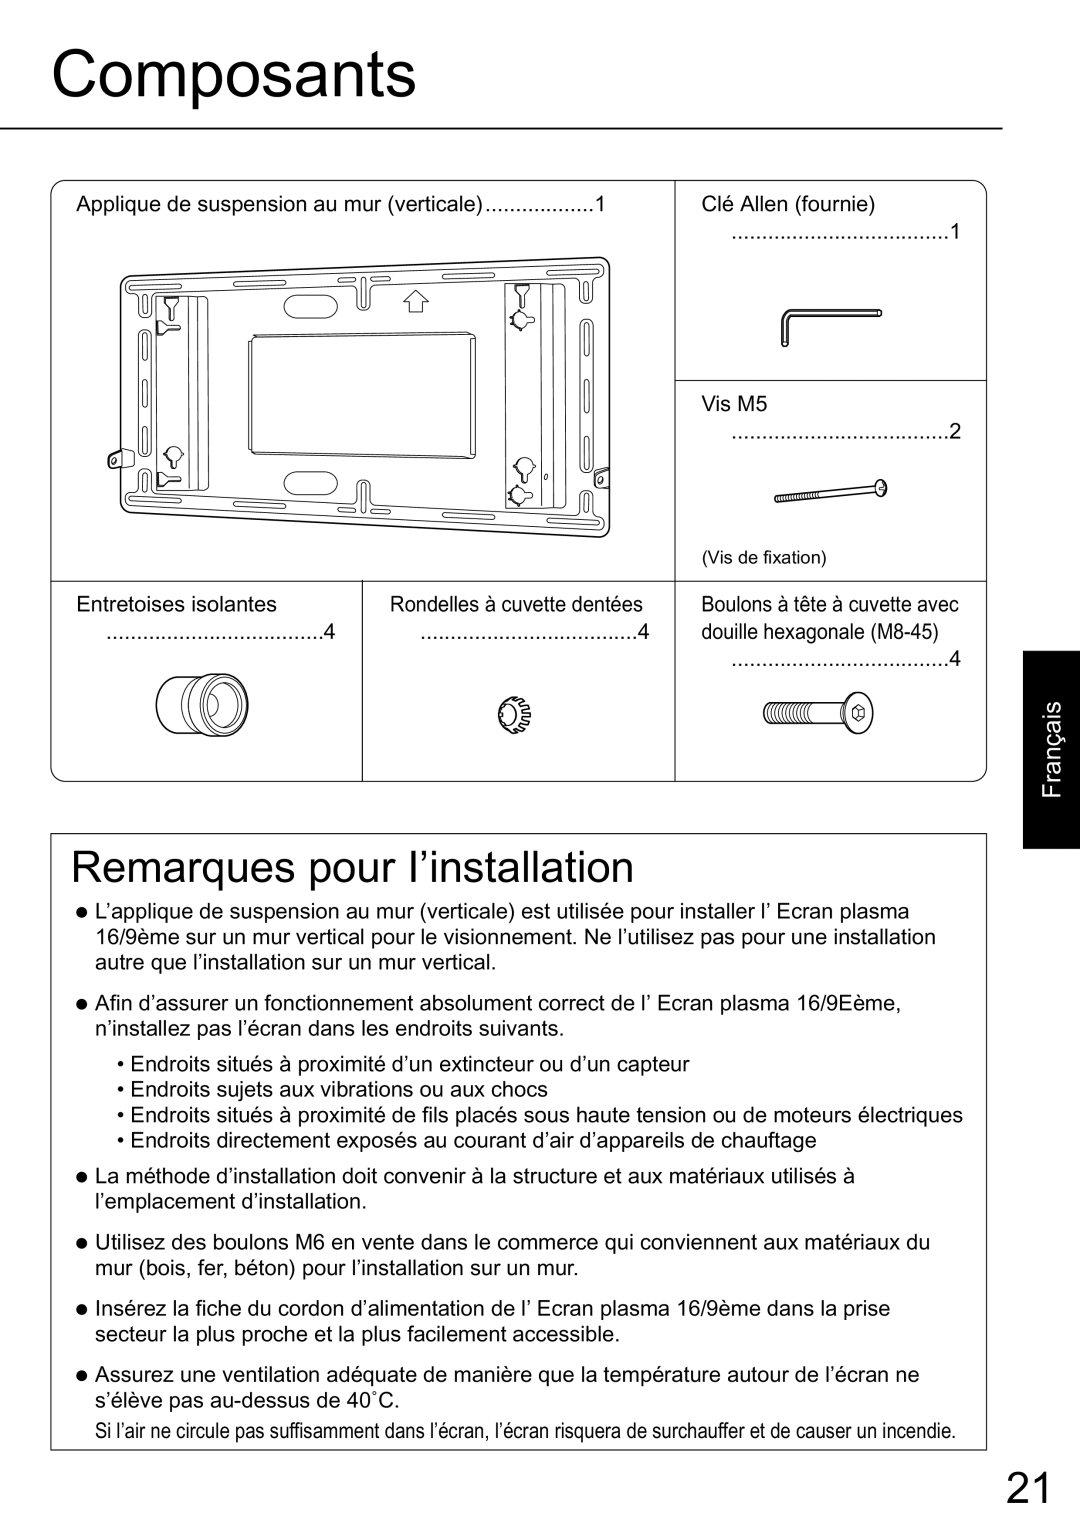 JVC TS-C50P2G, TS-C50P6G manual Remarques pour I’installation, Composants, Français 